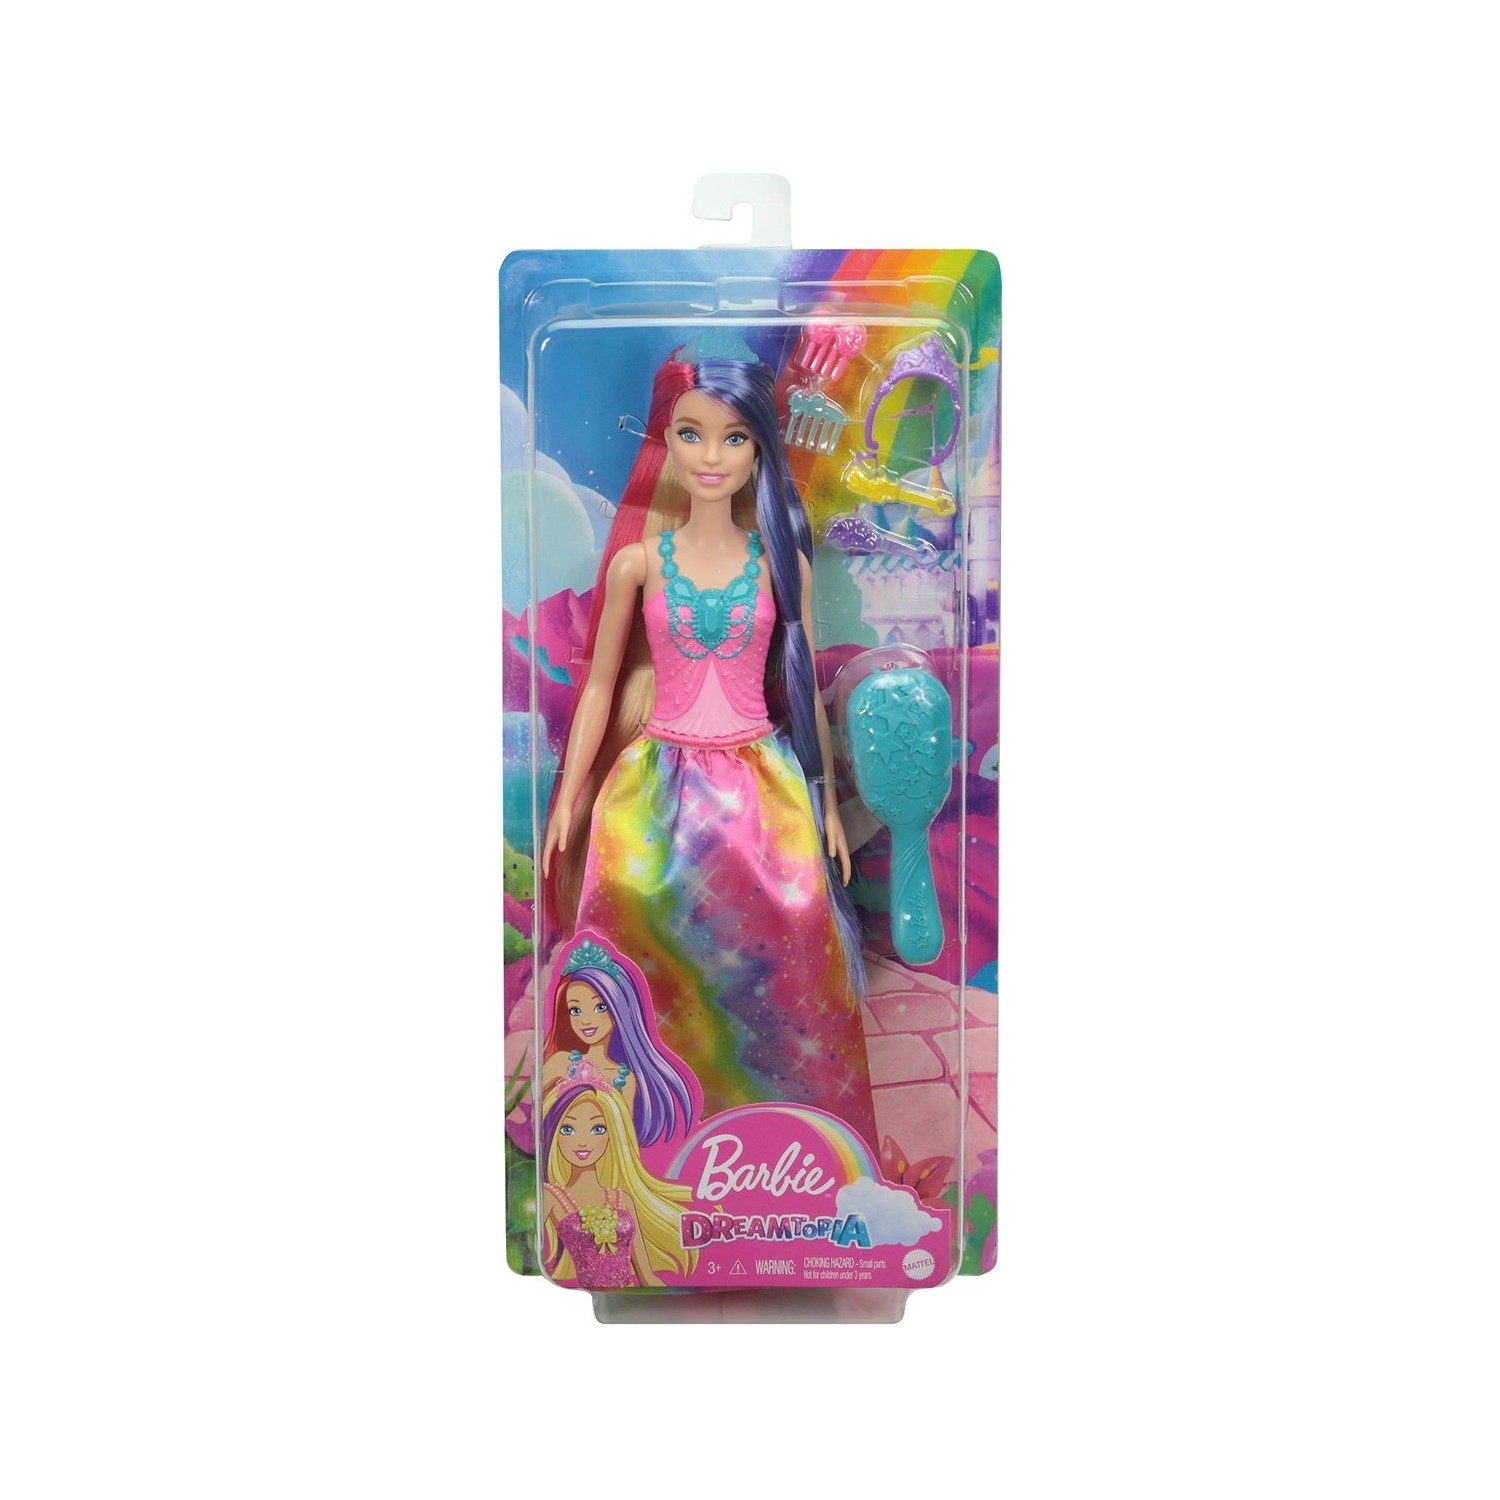 Кукла Barbie Barbie Dreamtopia Dreamland GTF37 кукла barbie дримтопия с аксессуарами